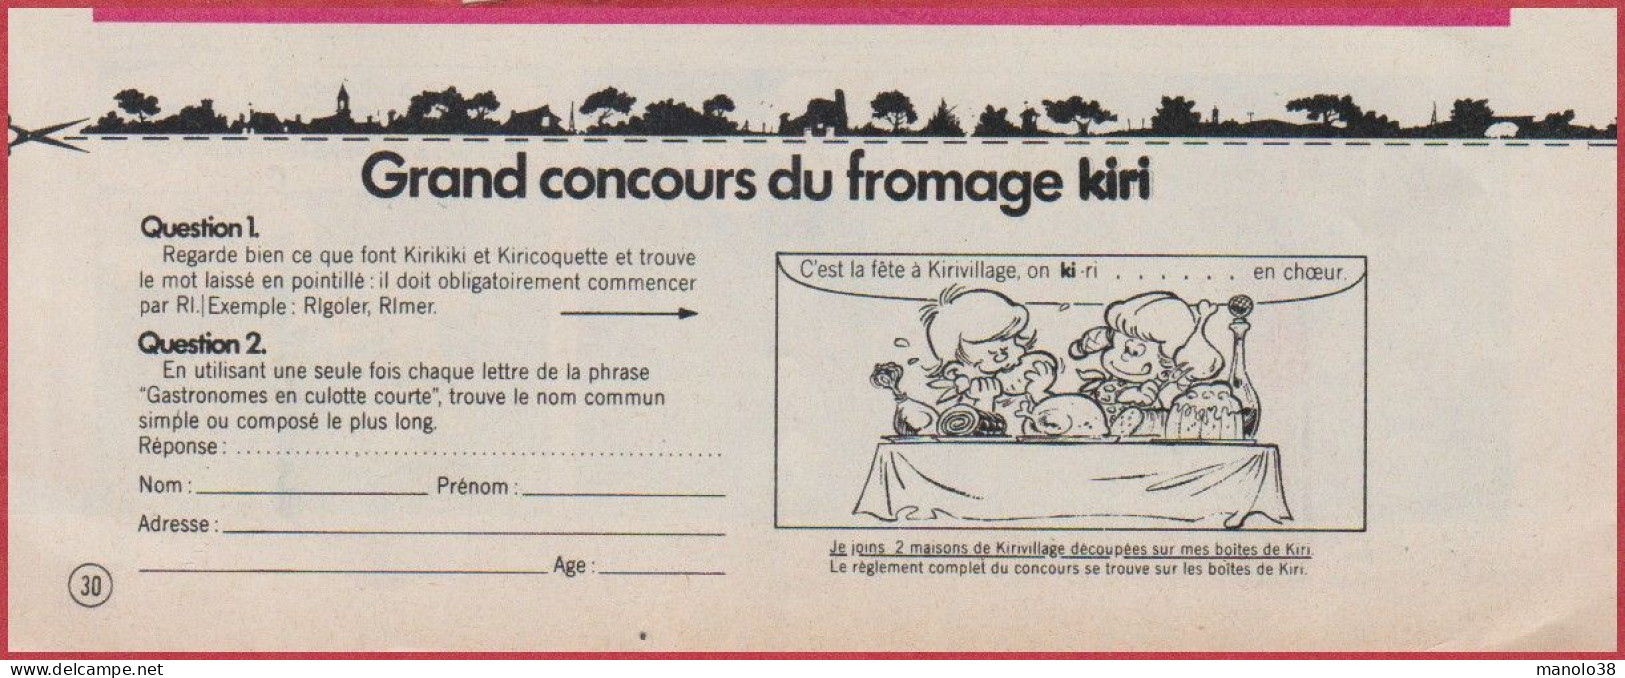 Kiri Présente Les Exploits De Kirikiki Et Kiricoquette. BD. Bande Dessinée De Roba. Concours. Fromage. 1975. - Pubblicitari